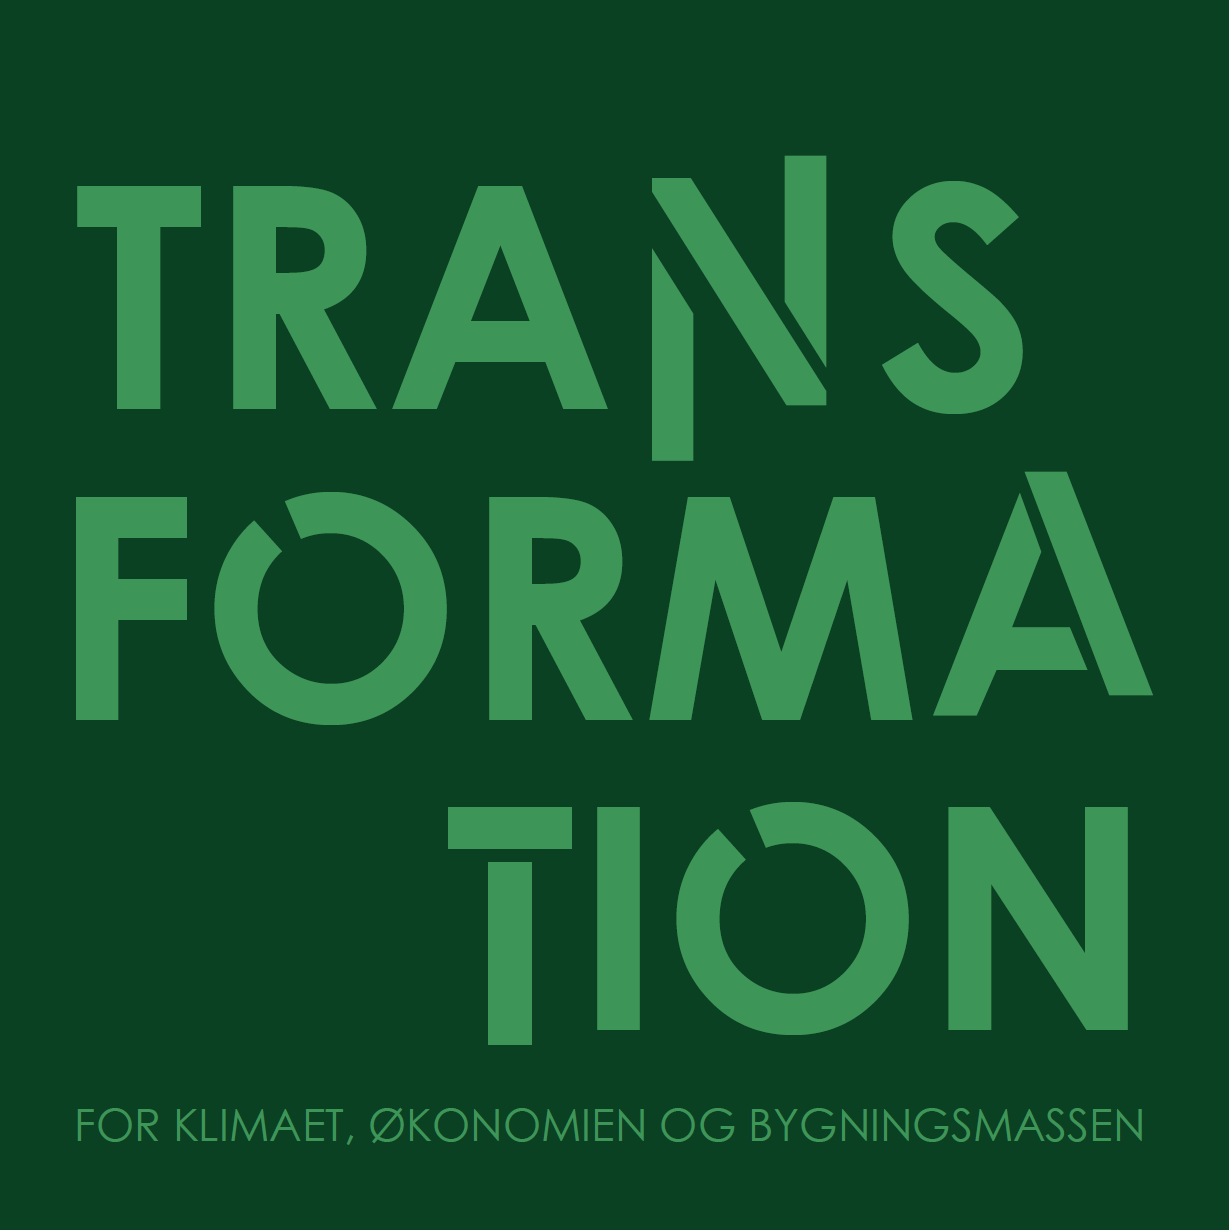 Transformation – For klimaet, økonomien og bygningsmassen